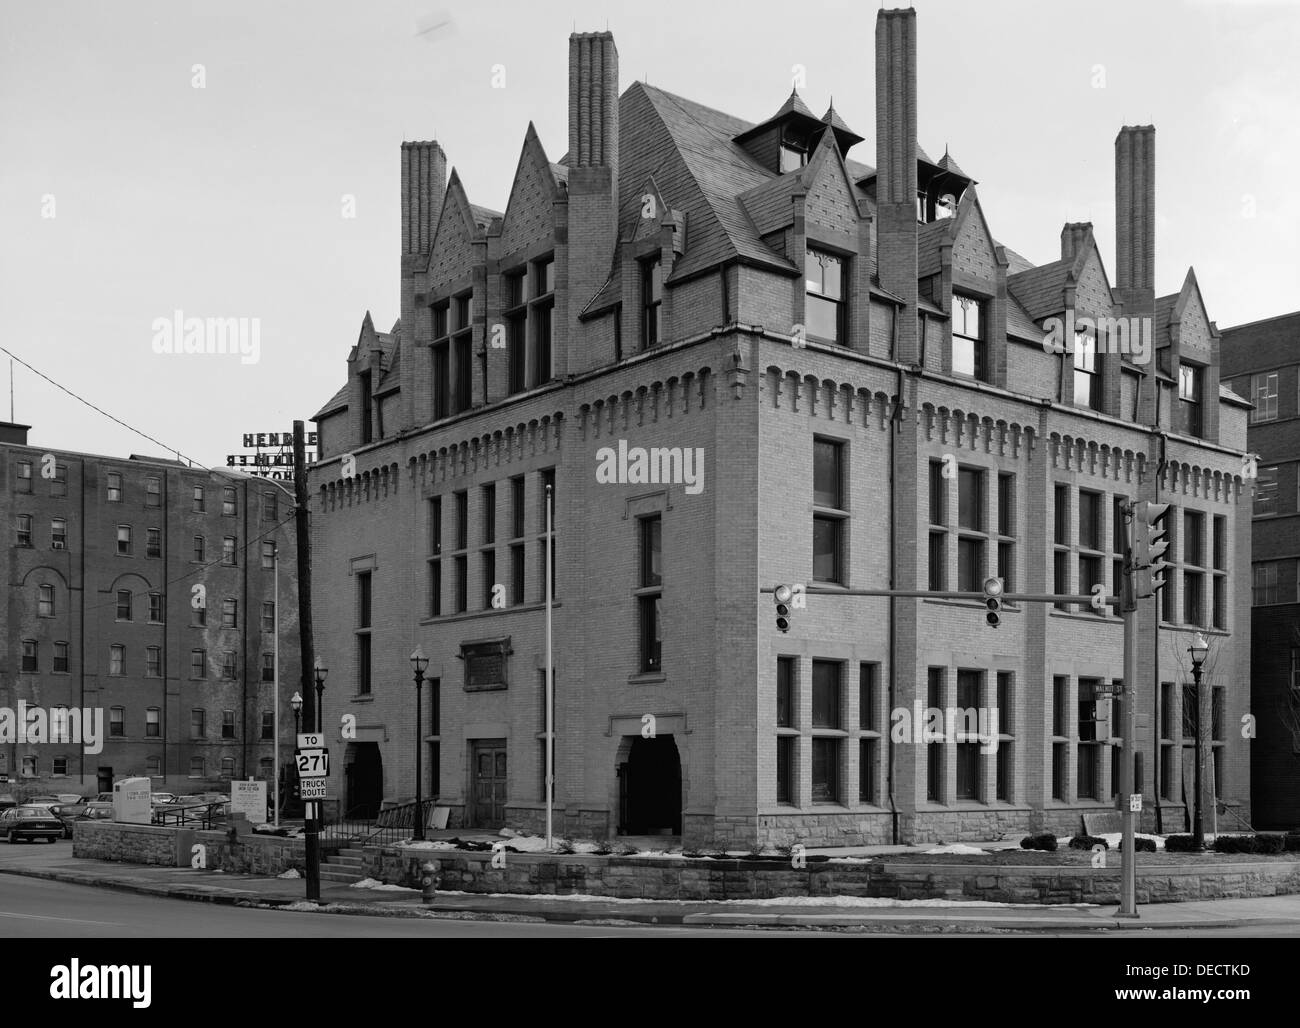 La toute première bibliothèque Carnegie, construit en 1889 après la grande inondation de Johnstown. Sur le PNSR depuis 1972 au 304 Washington St., Johnstown, New York. Maintenant, le site du Musée de l'inondation de Johnstown Banque D'Images